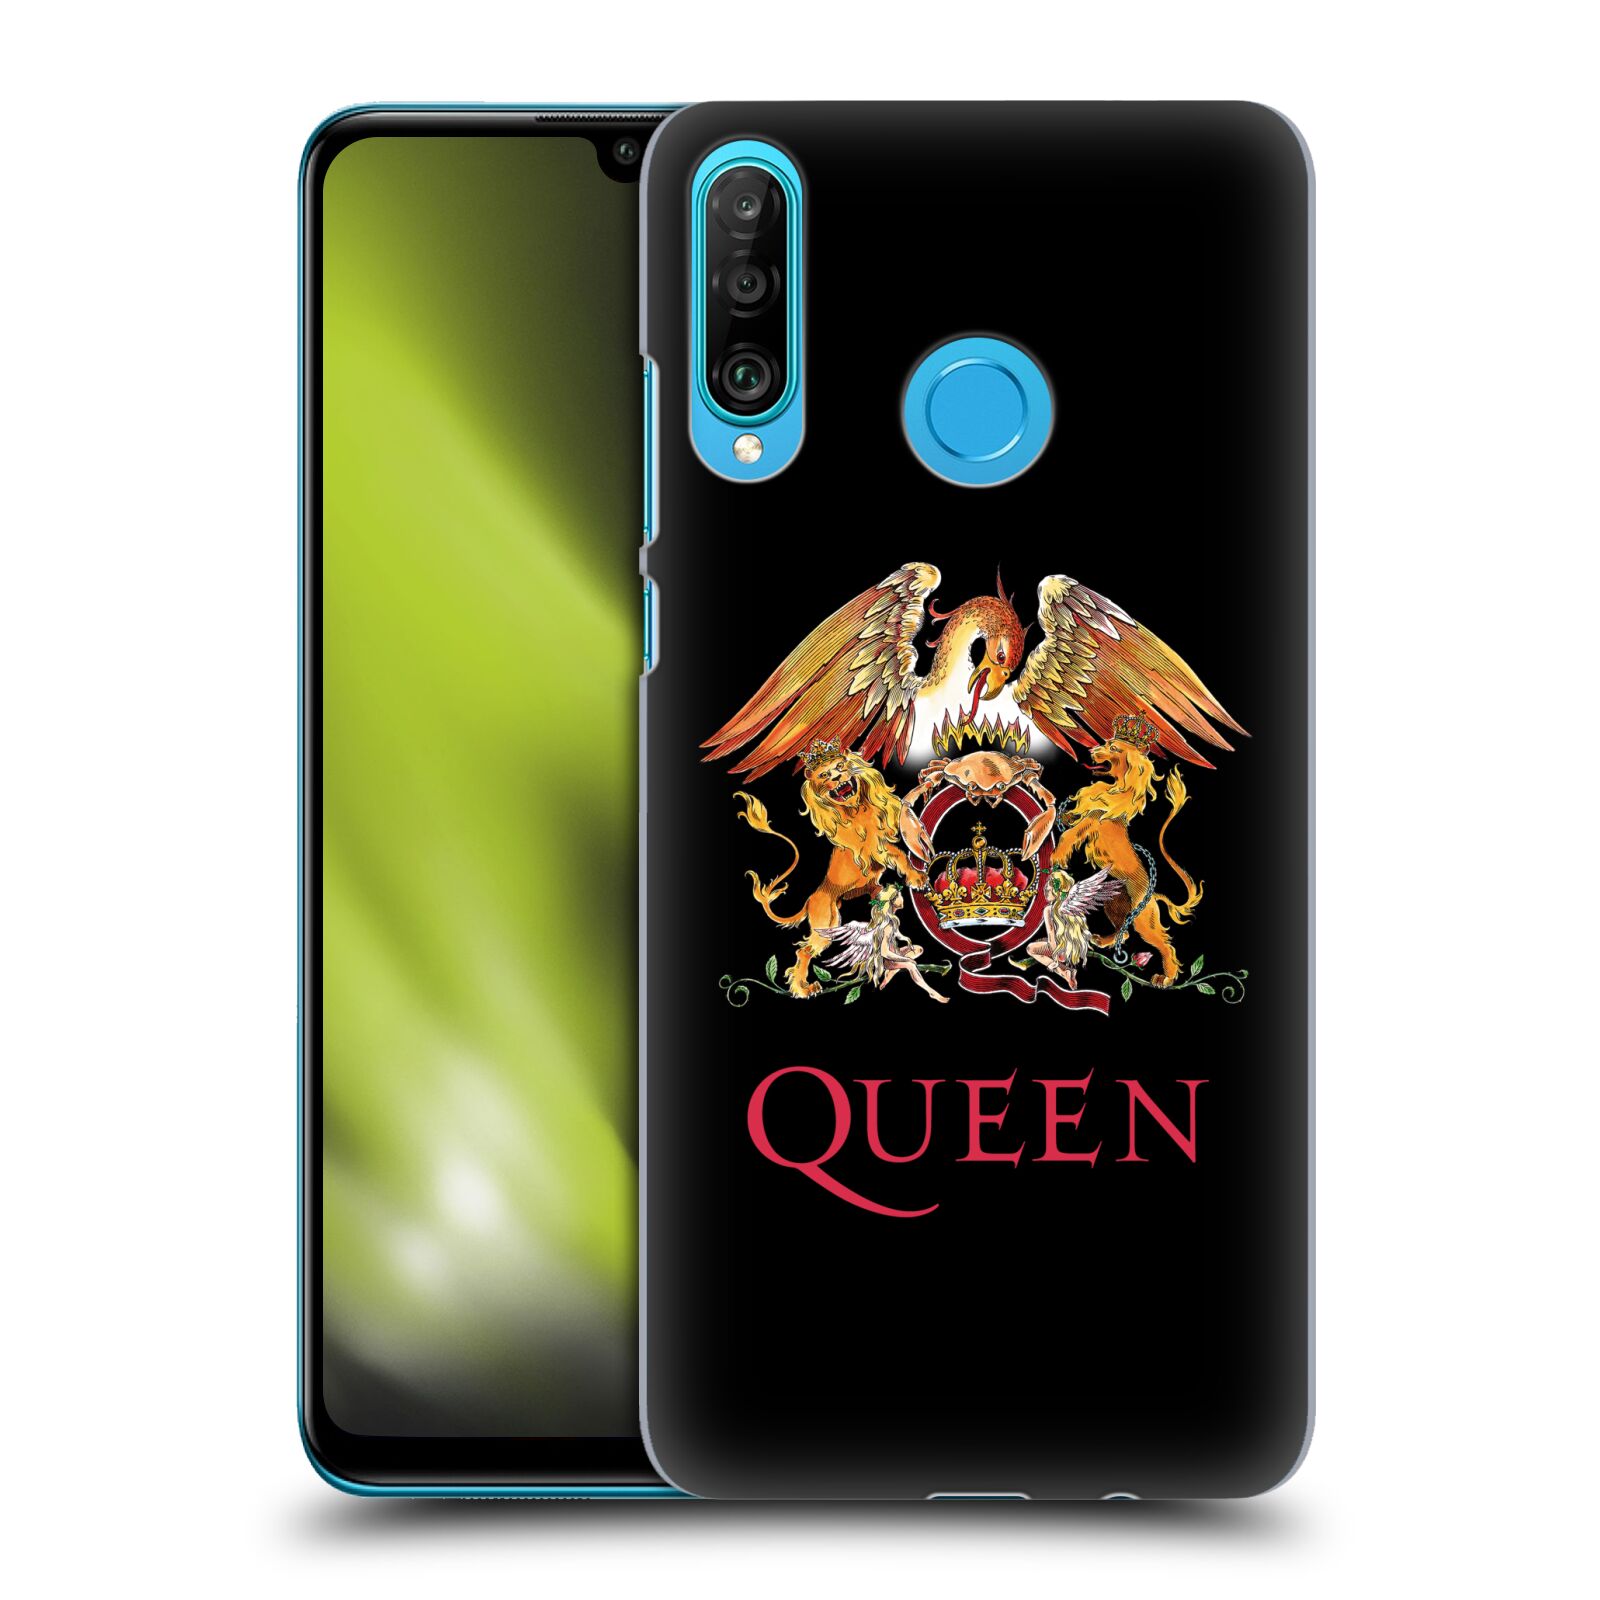 Plastové pouzdro na mobil Huawei P30 Lite - Head Case - Queen - Logo (Plastový kryt, pouzdro, obal na mobilní telefon Huawei P30 Lite Dual Sim (MAR-L01A, MAR-L21A, MAR-LX1A) s motivem Queen - Logo)